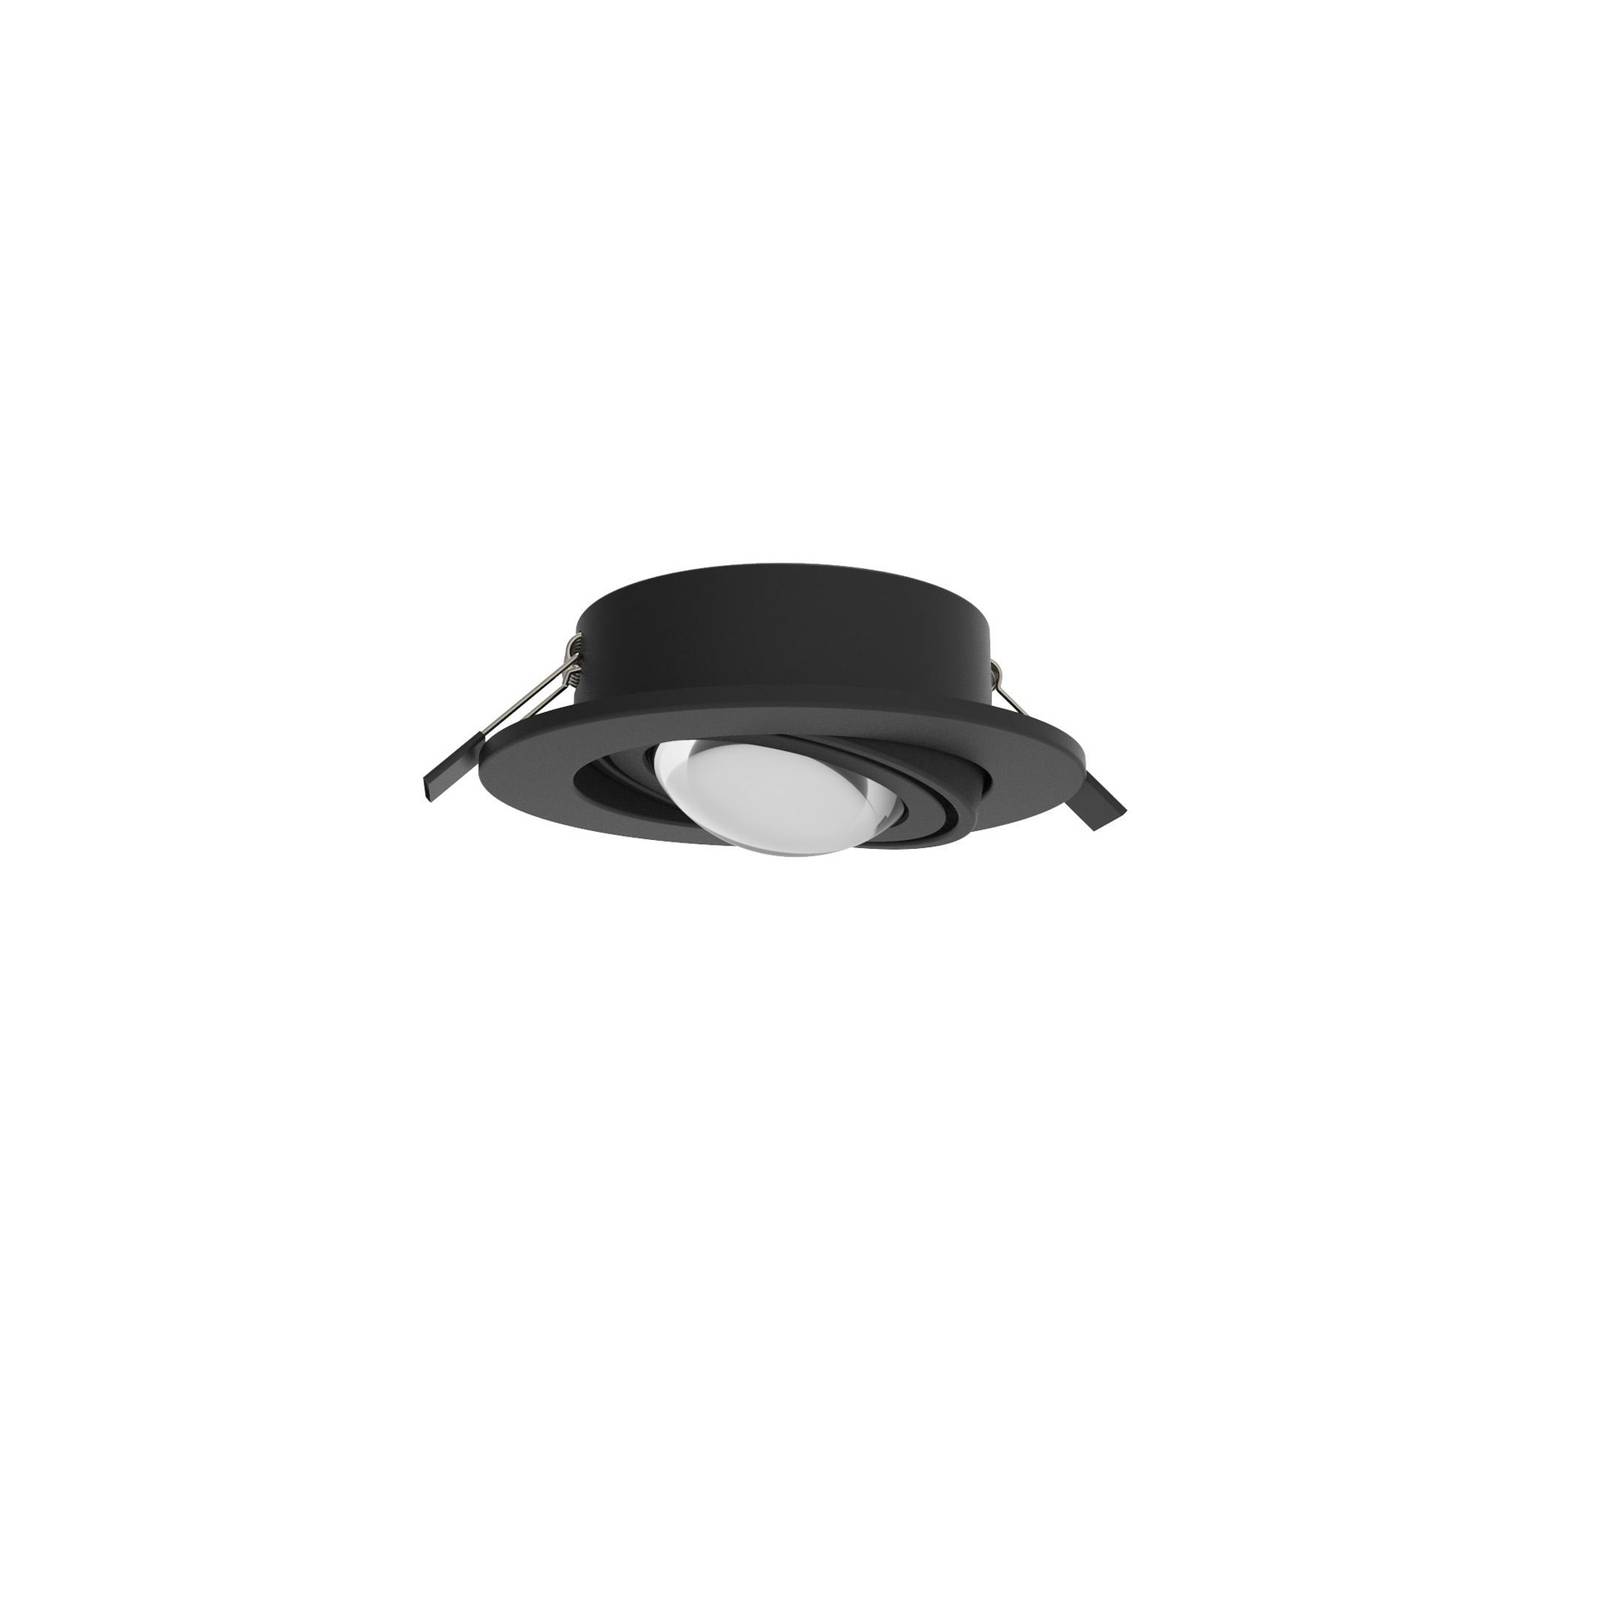 MEGATRON LED-es süllyesztett reflektor Planex Powerlens, 4,8 W, fekete